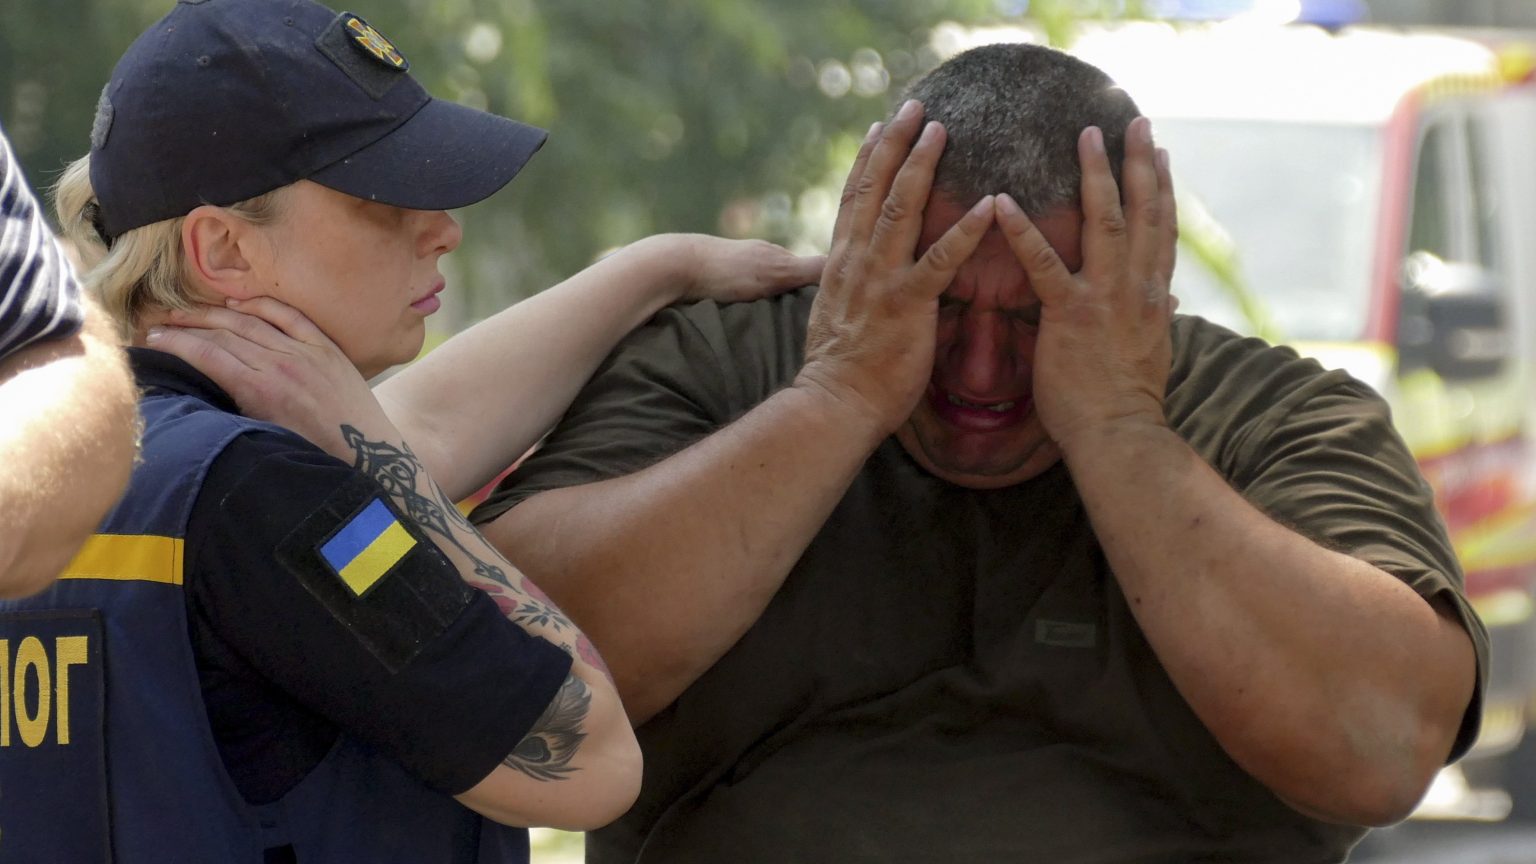 Megemlékezésen vettek részt egy ukrán falu lakosai, amikor orosz légicsapás érte őket